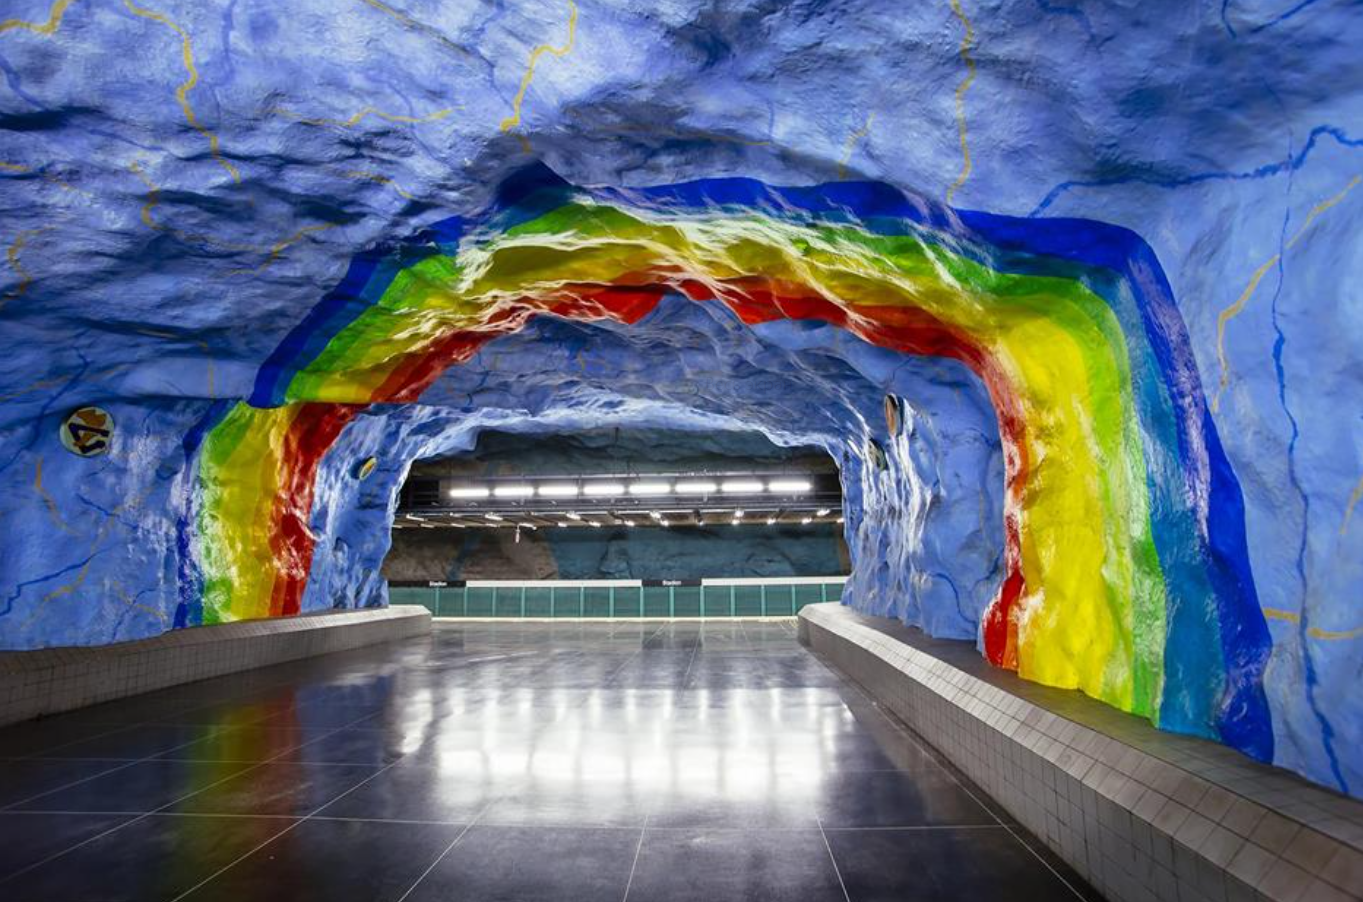 7-stadion-stockholm-metro-sweden-png.B8B5.png